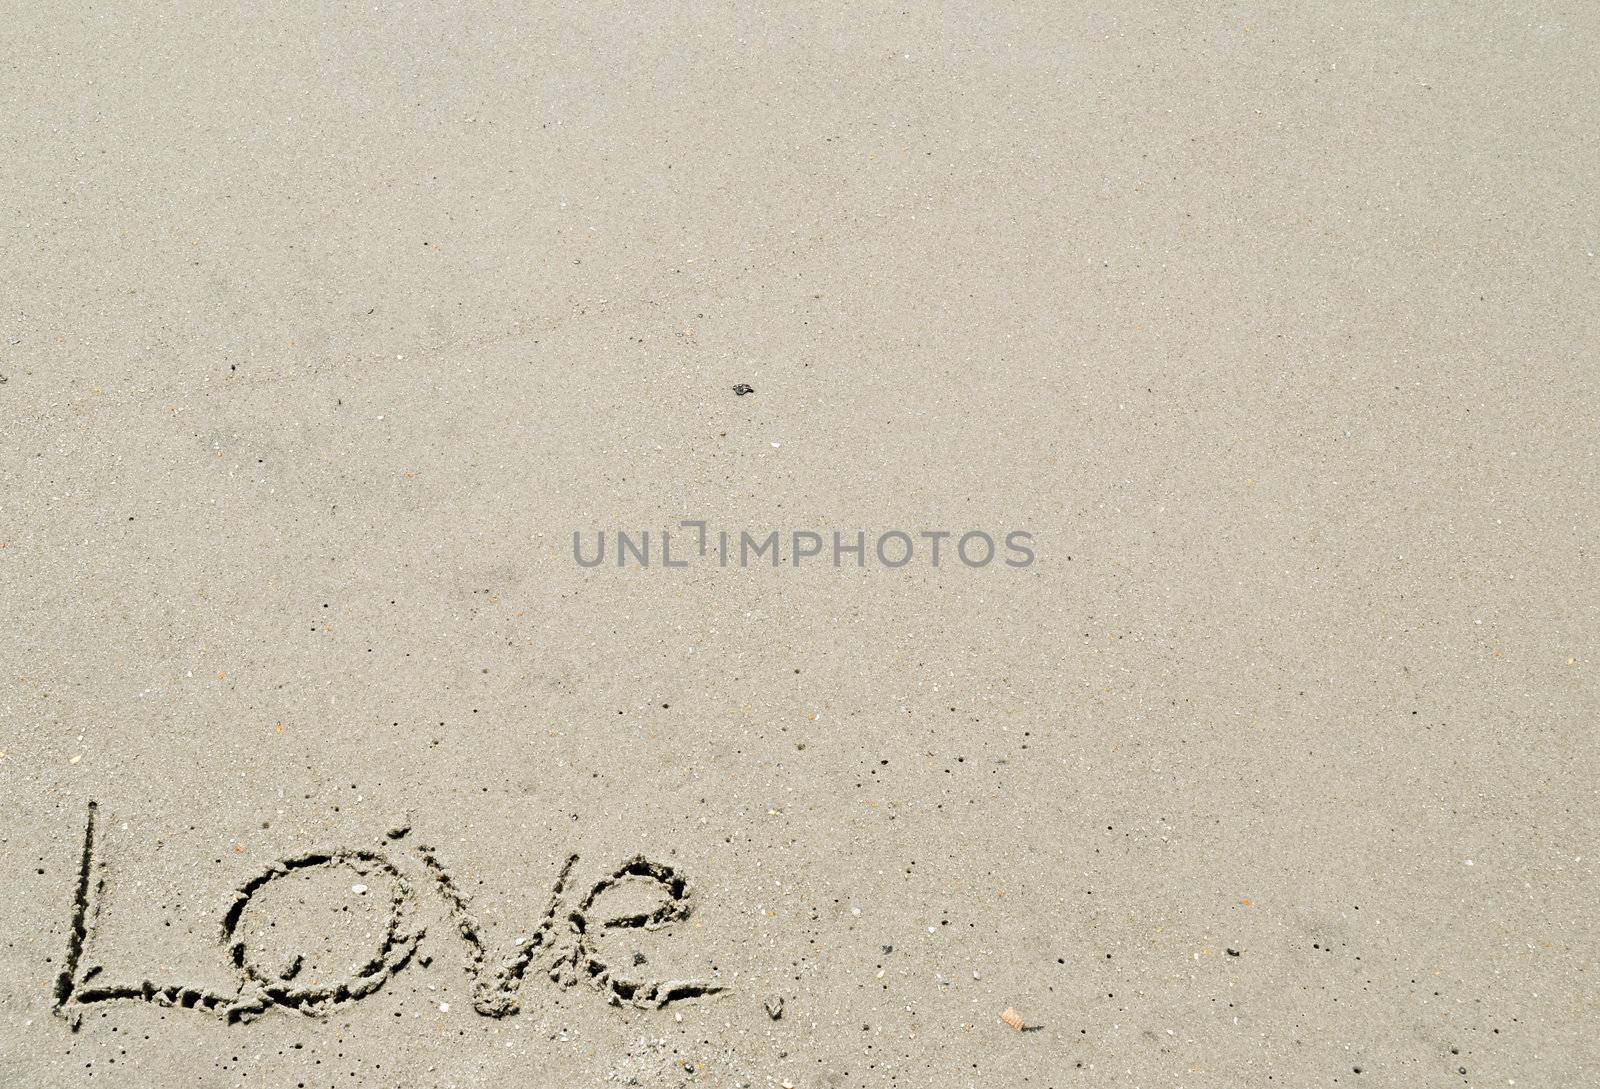 Love written in the sand - bottom left corner